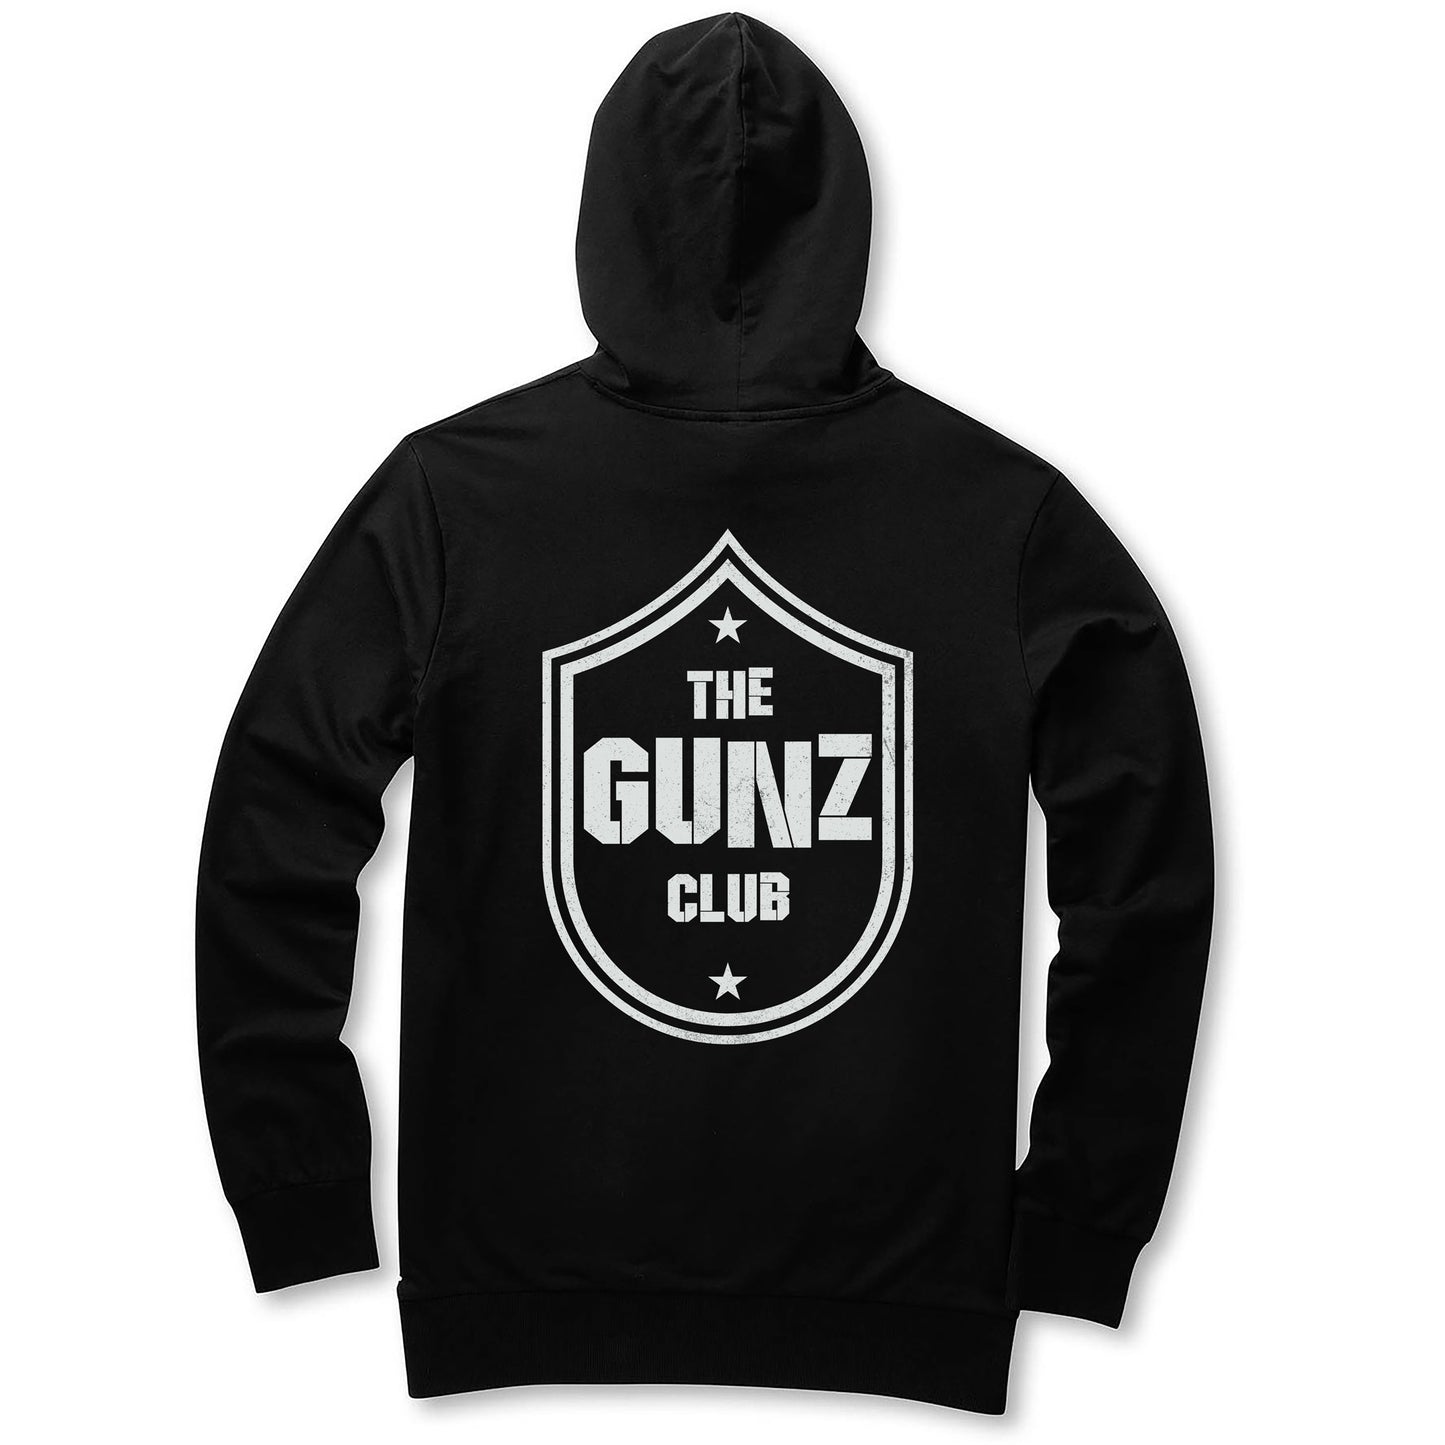 GUNZ CLUB ZIP-UP